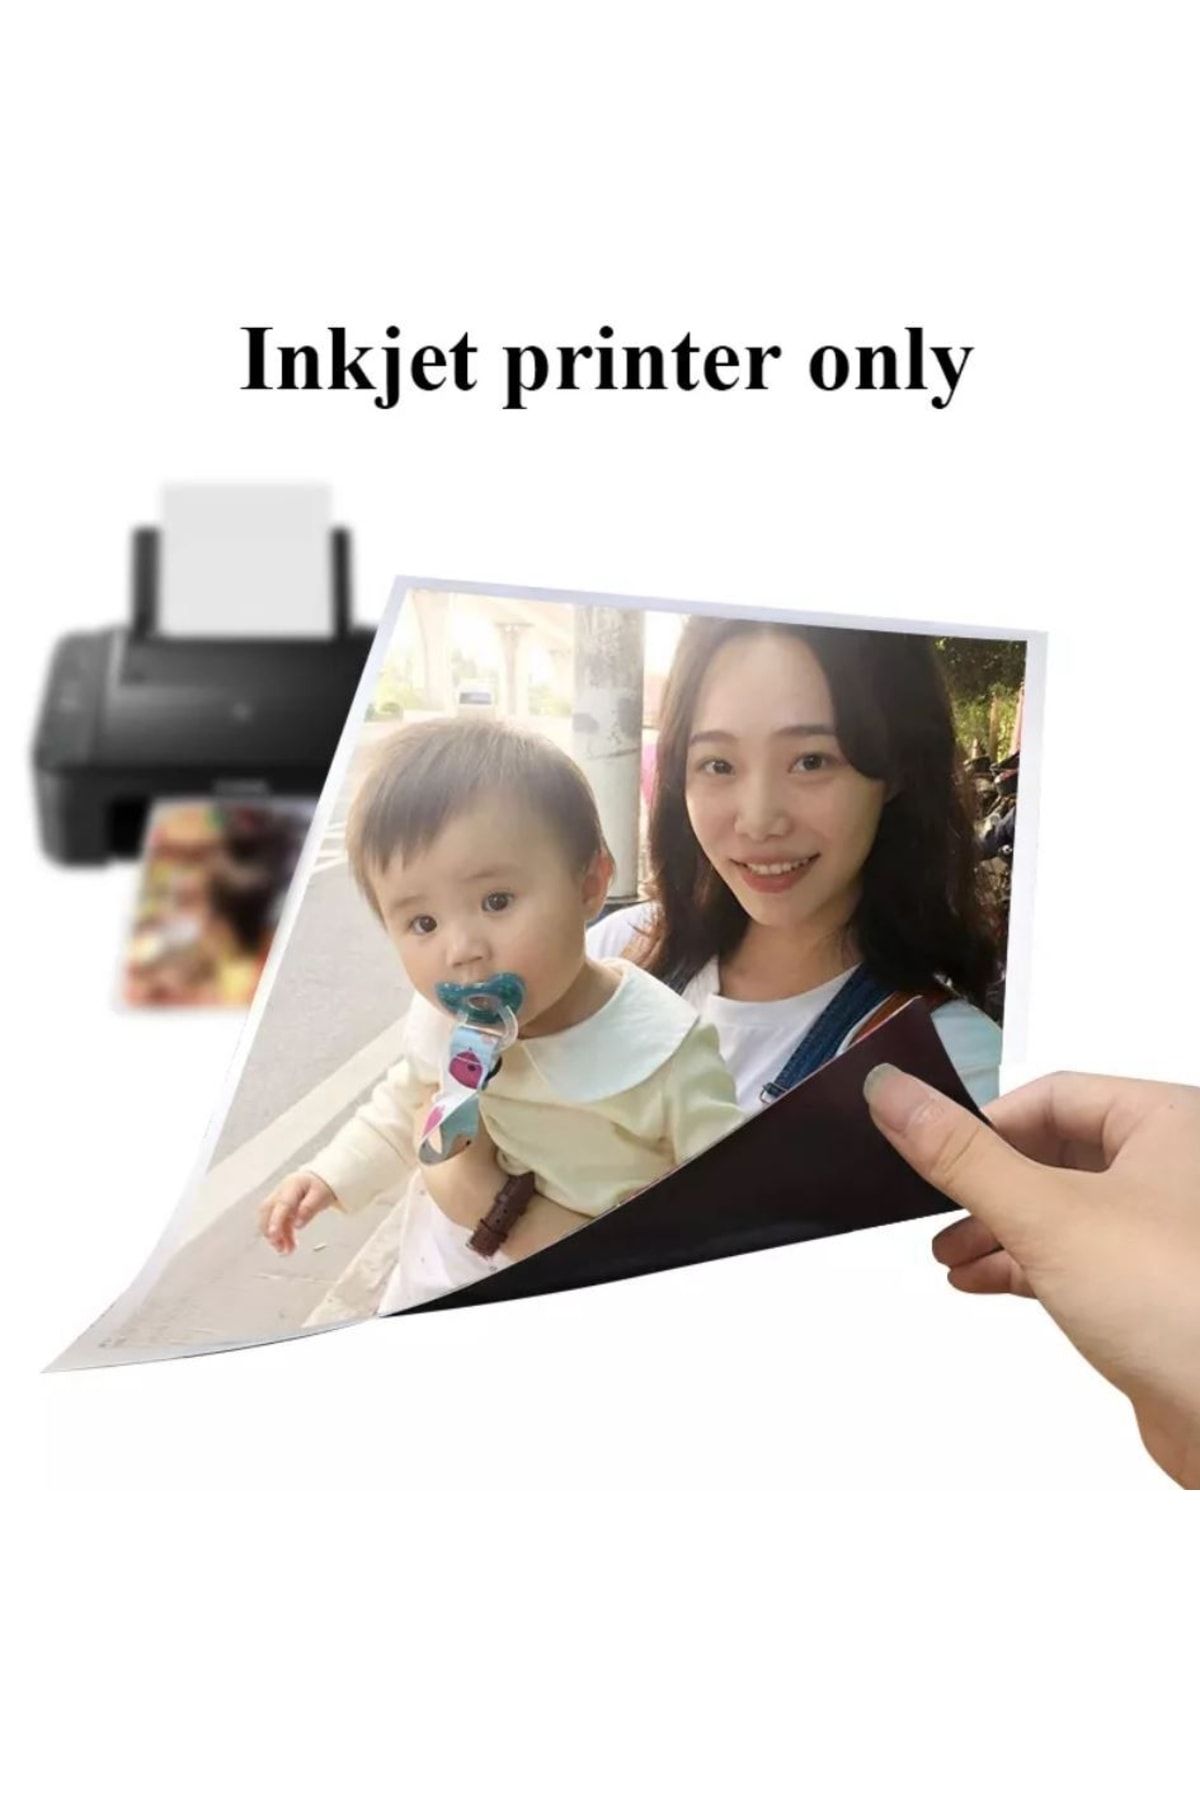 Hdg Beyaz Baskı Yapılabilir Manyetik Fotoğraf Kağıdı (21x 30cm) Püskürtmeli Ve Inkjet Yazıcılara Uygun